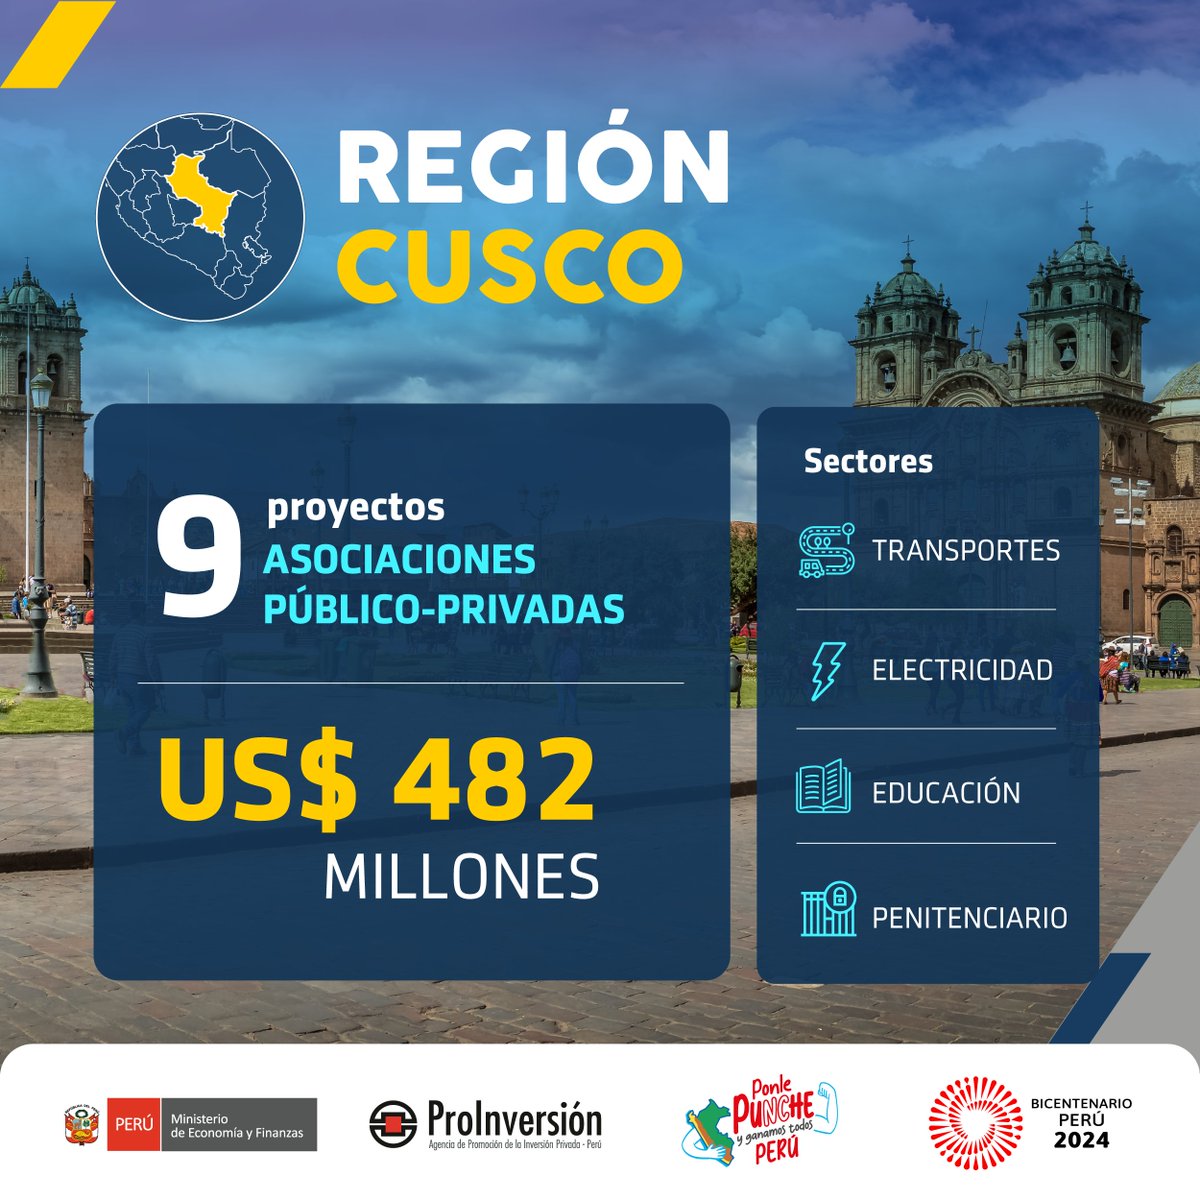 👉🏽 En #Cusco, #PROINVERSIÓN ha impulsado la adjudicación de 9 proyectos mediante el mecanismo de Asociación Público-Privada por un monto de inversión de US$ 482 millones.
✅ Estas iniciativas permiten brindar mejor infraestructura y servicios en sectores como transporte,